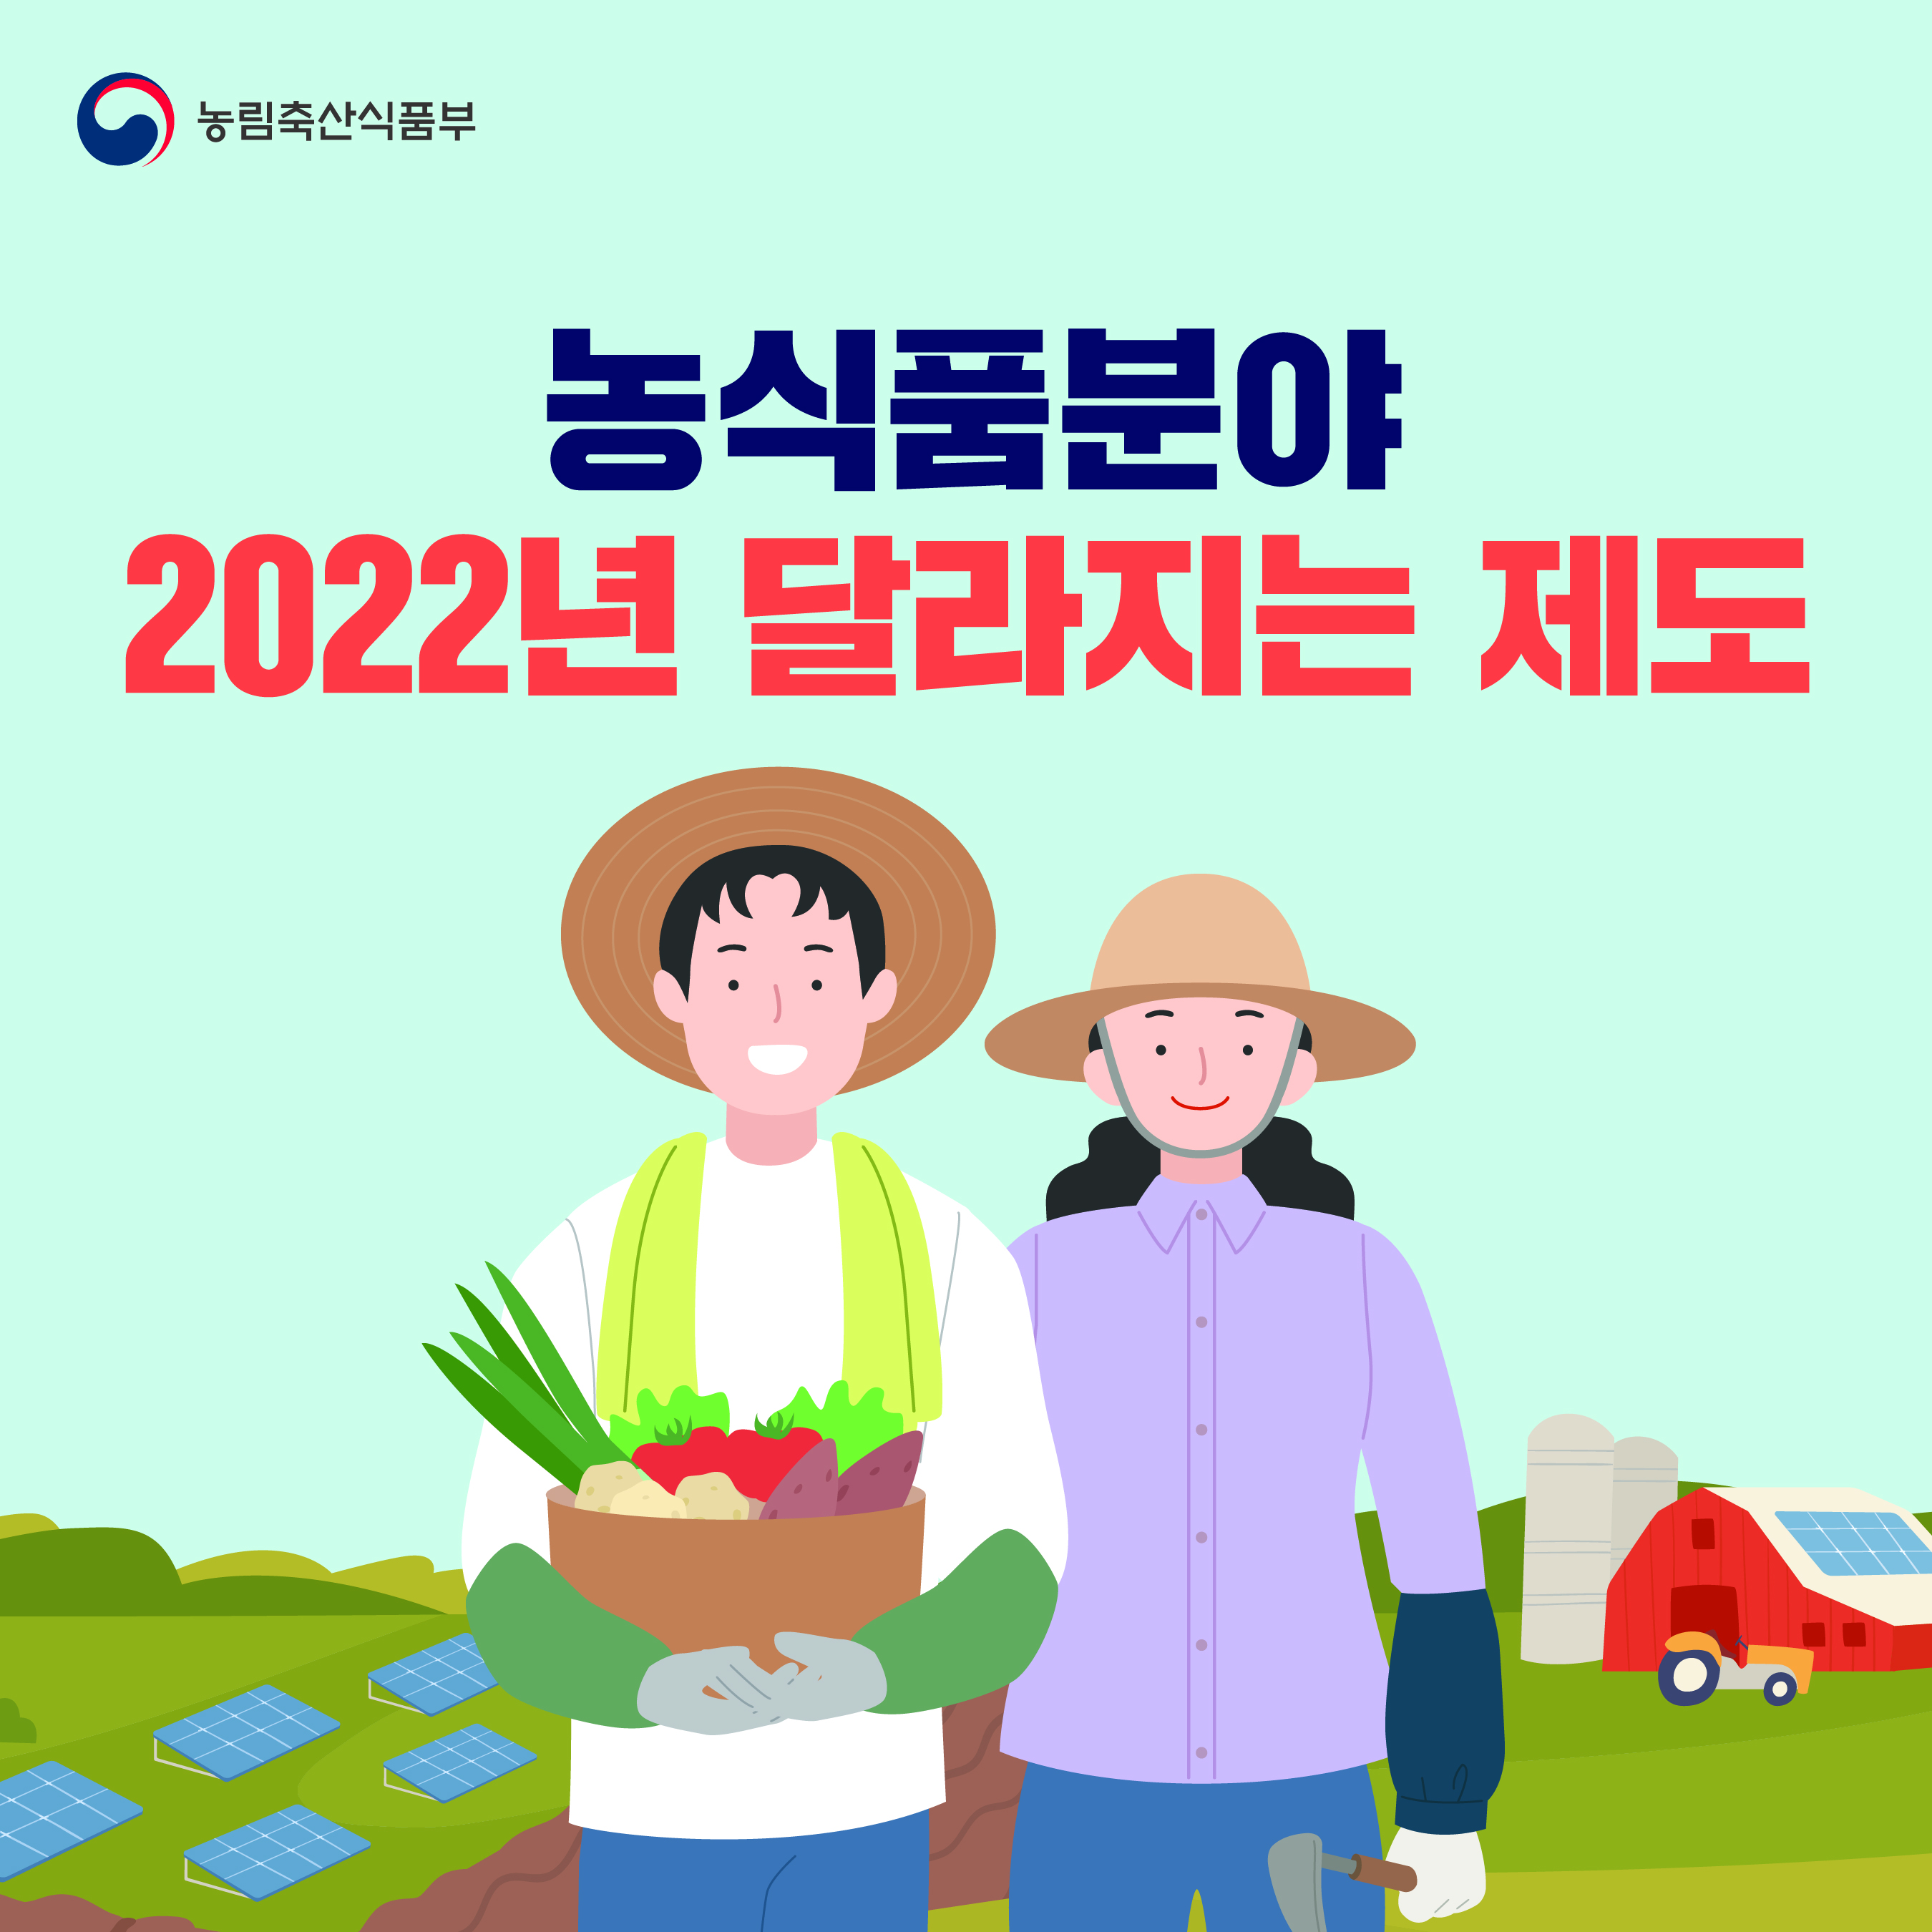 농식품분야 2022년 달라지는 제도  22년 달라지는제도-1@3x-100.jpg